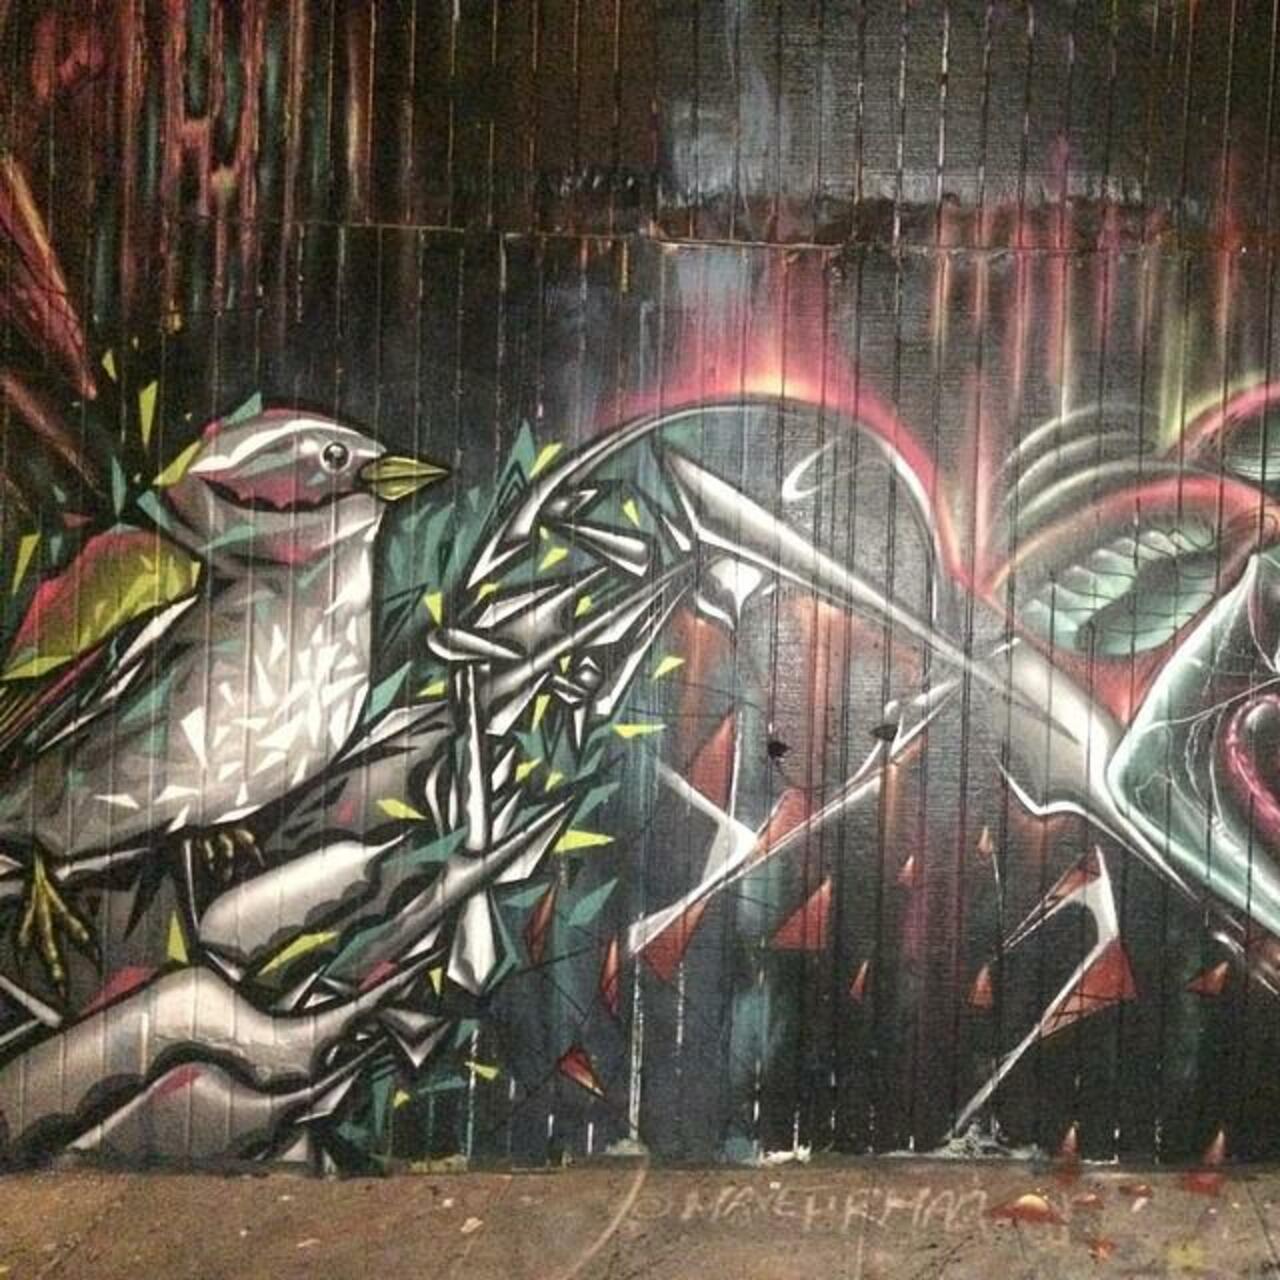 #Mural #Graffiti #WallArt #Art #MissionStreet #SanFrancisco http://t.co/c5V0ELpfp9